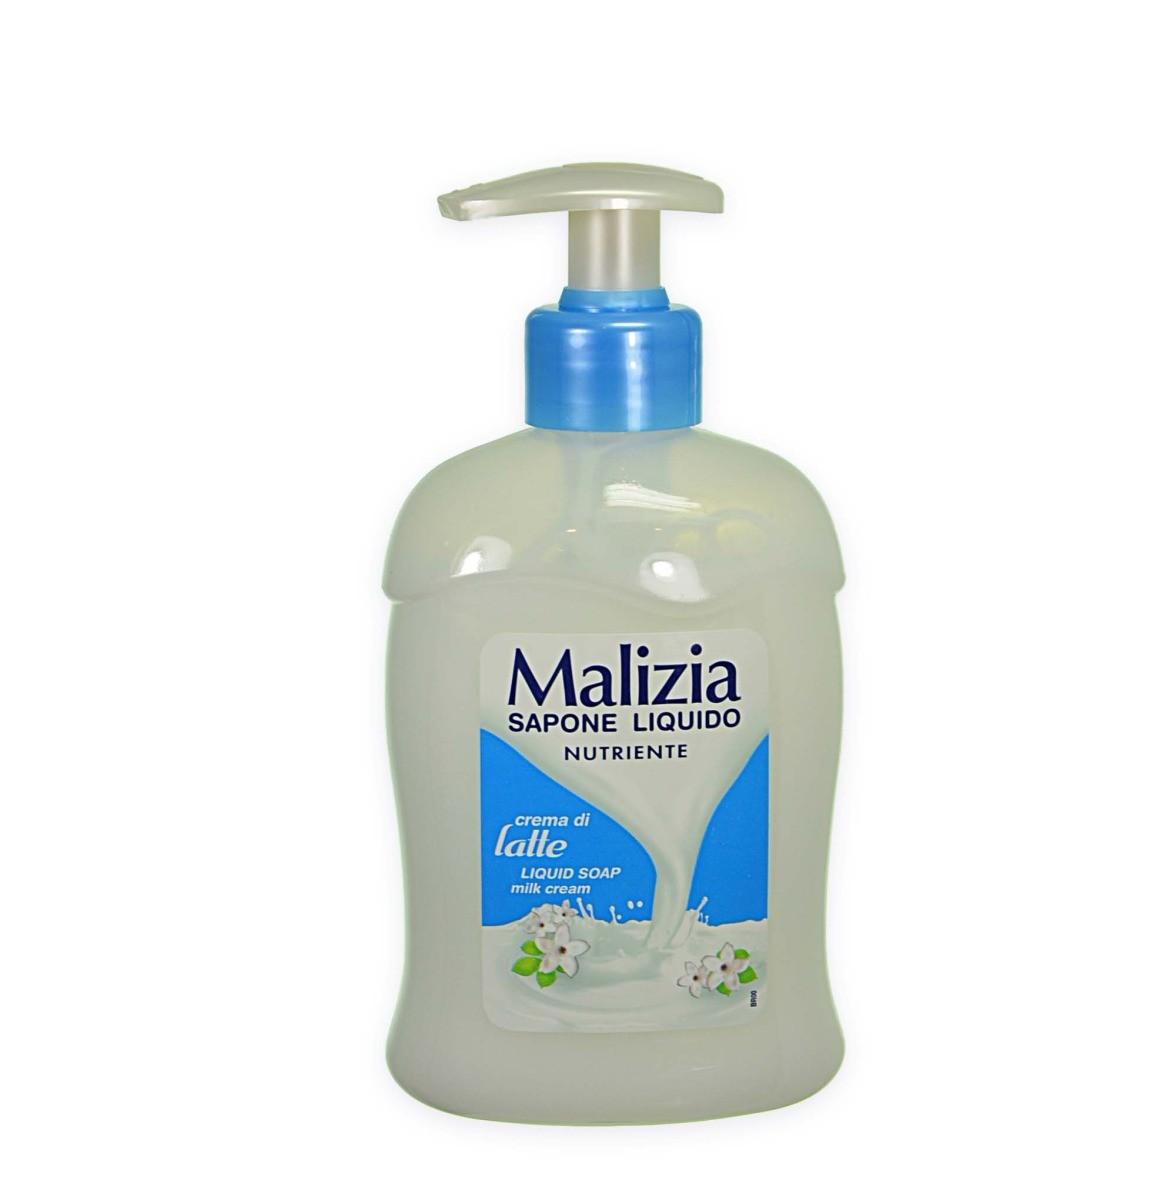 Жидкое мыло Malizia. Malizia мыло жидкое 2015 год. Итальянское мыло. Мализиа крем.